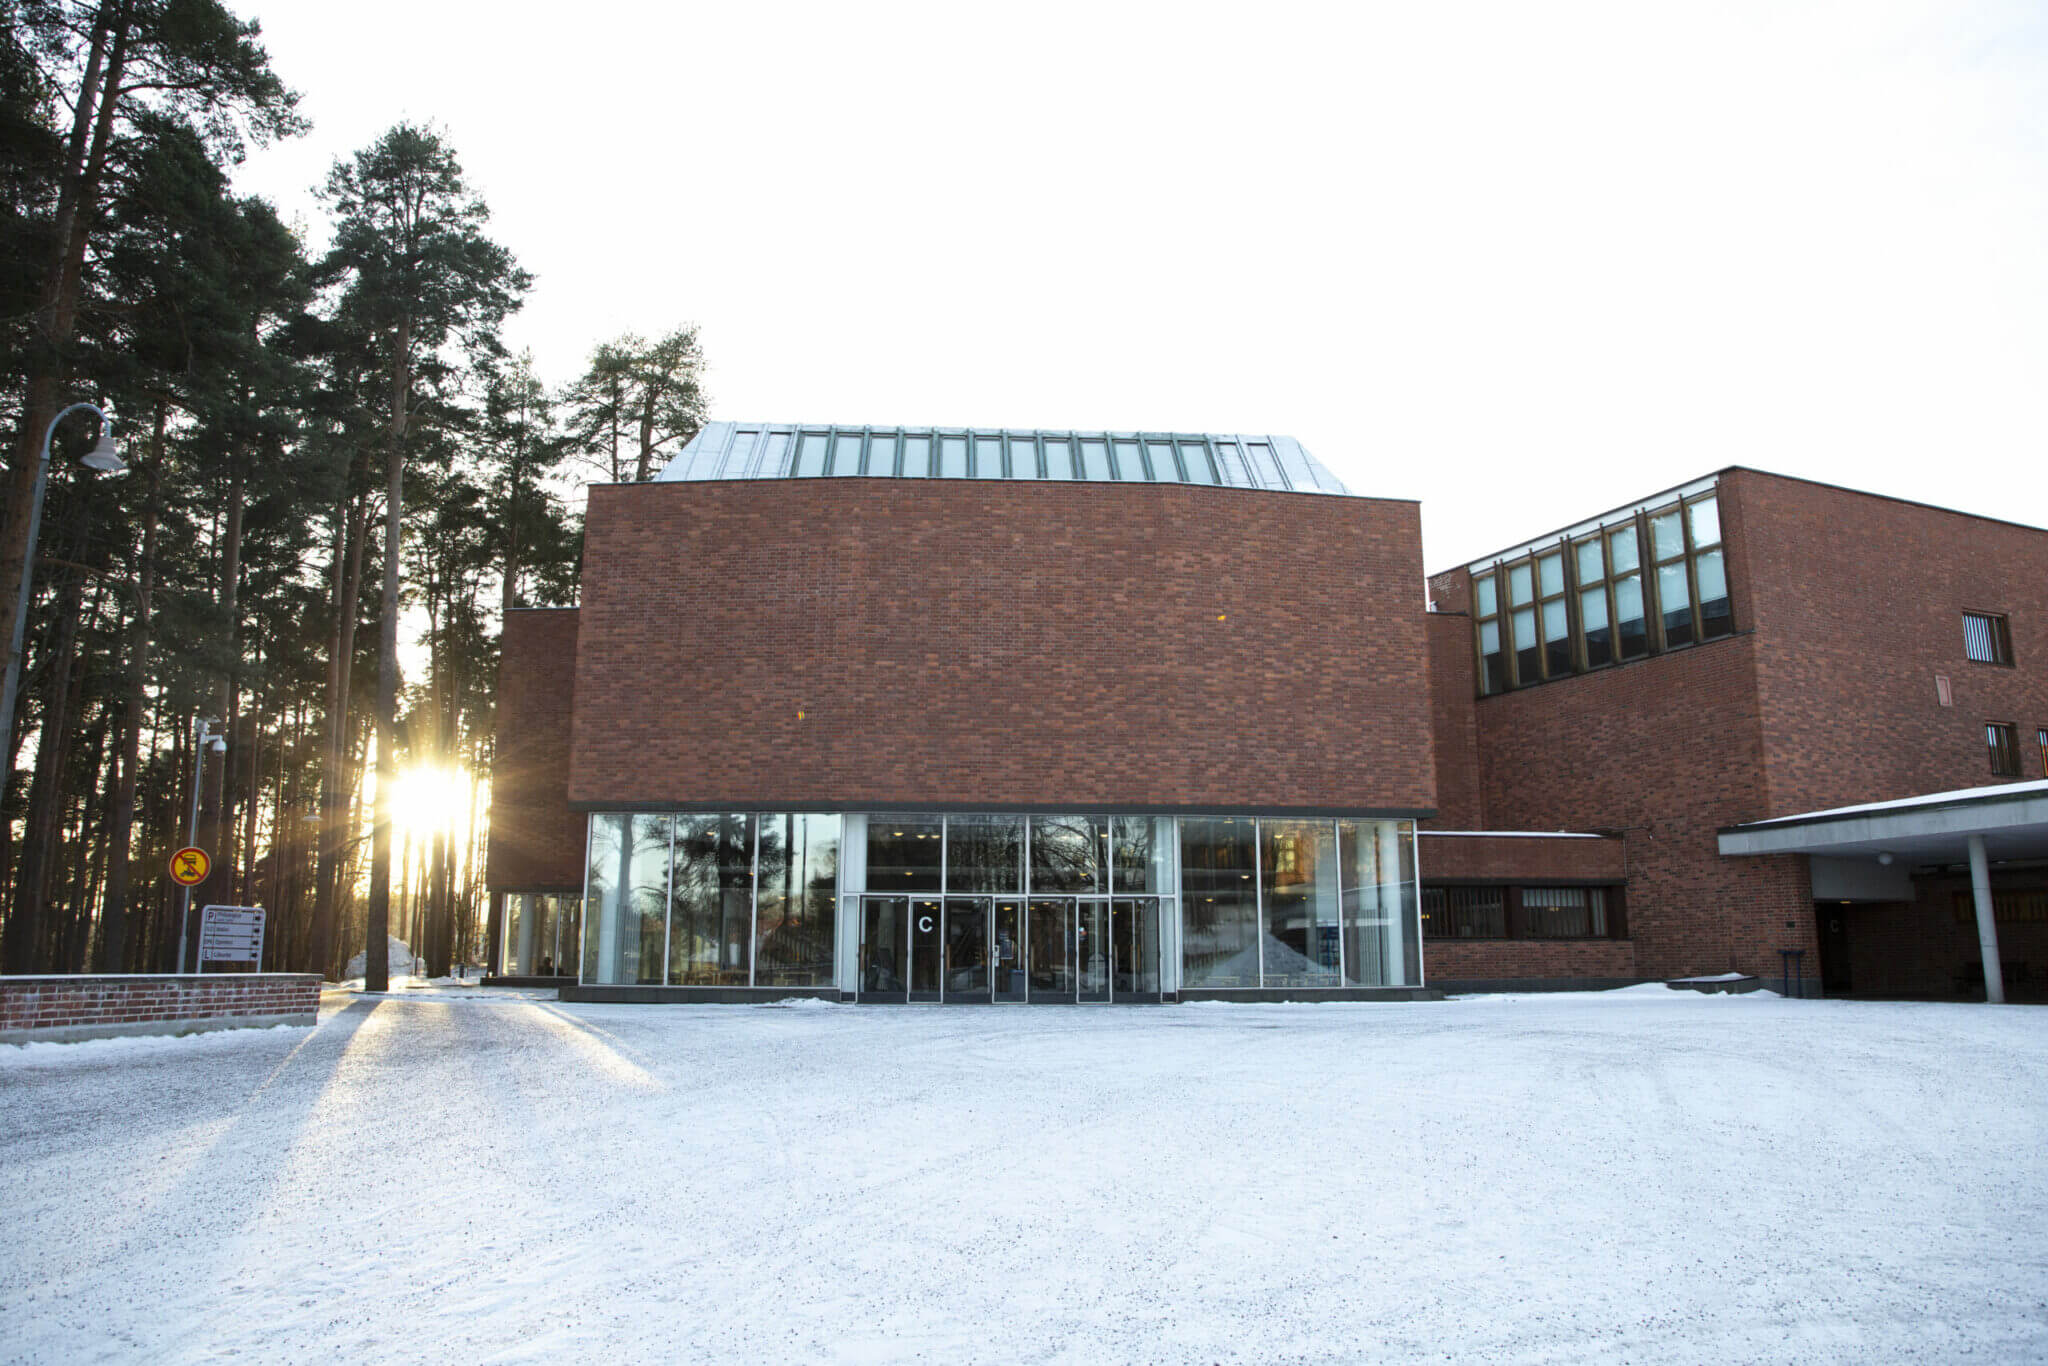 Jyväskylän yliopisto